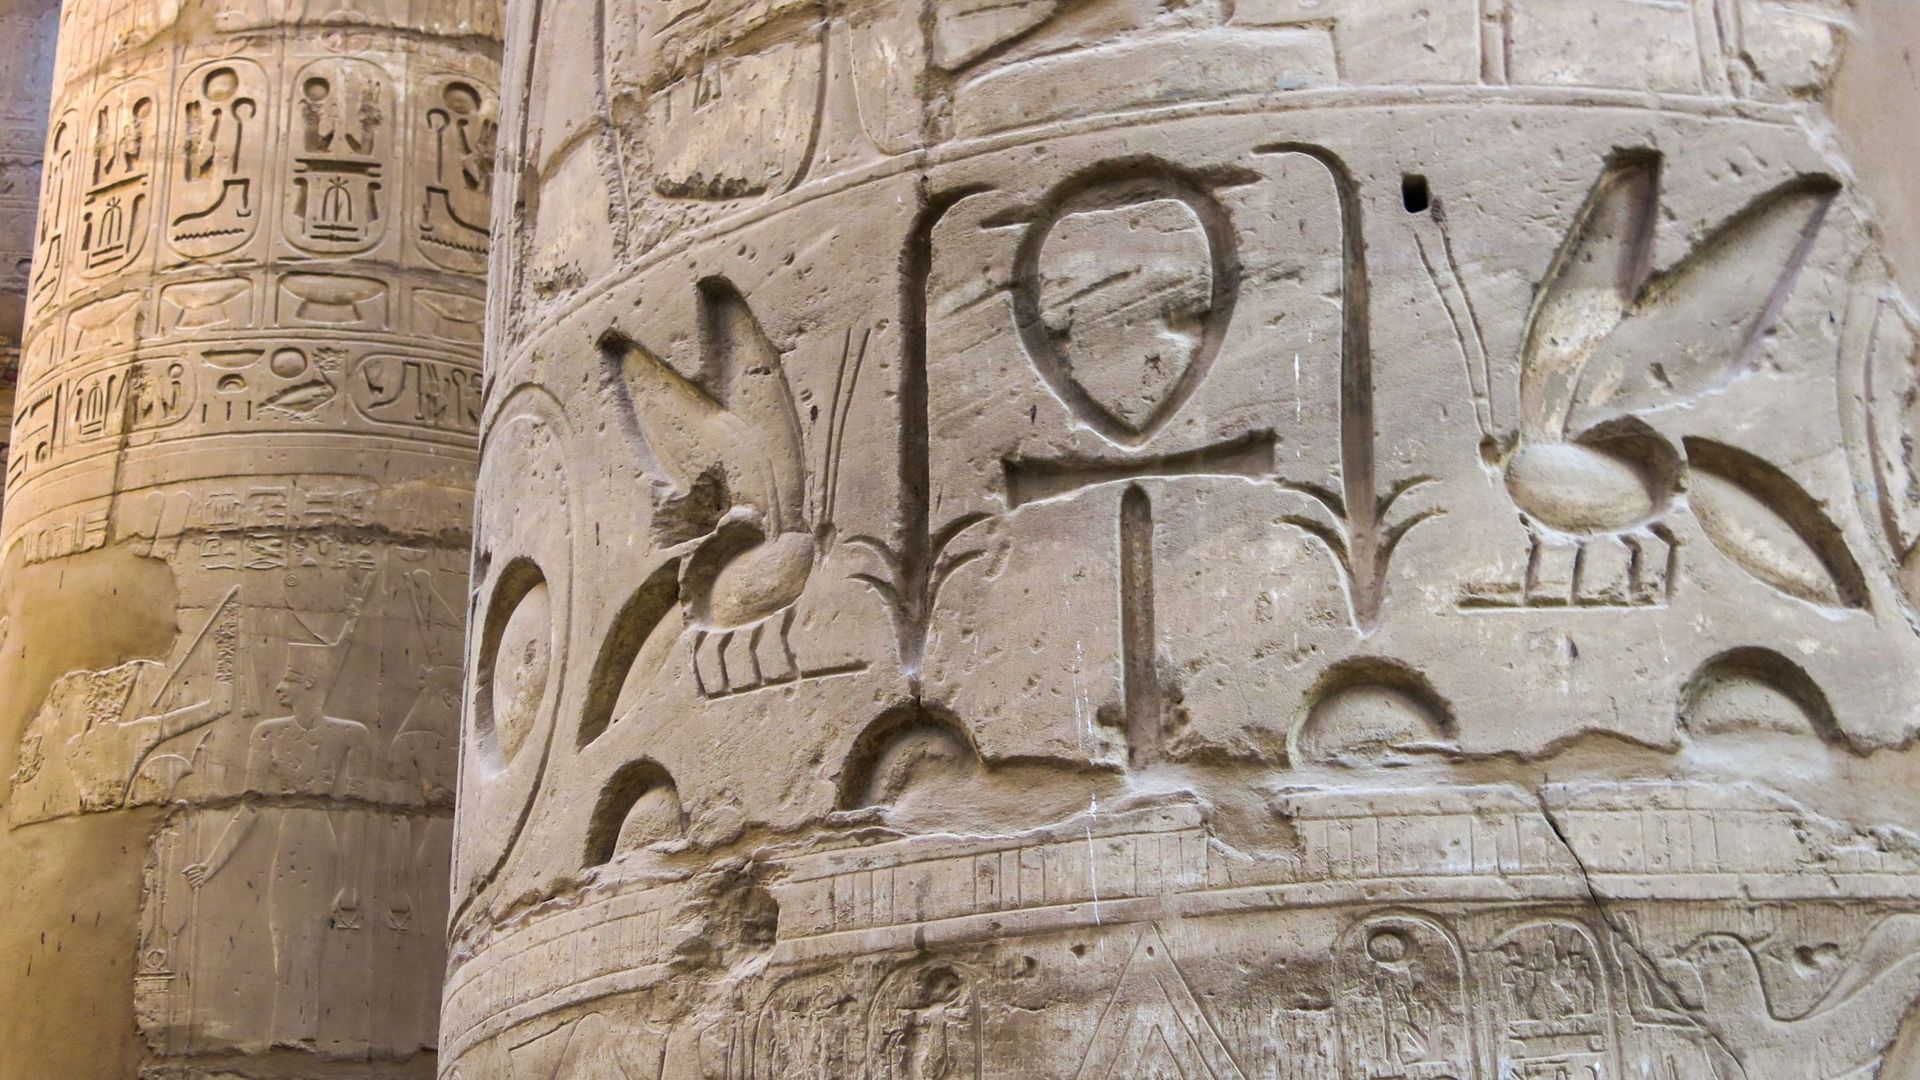 Détail des colonnes du temple de Karnak, à Louxor-Thèbes, en Égypte. Au premier plan, des abeilles, la clé de la vie et la fleur de papyrus. En arrière-plan, on peut voir des détails de reliefs et de hiéroglyphes.